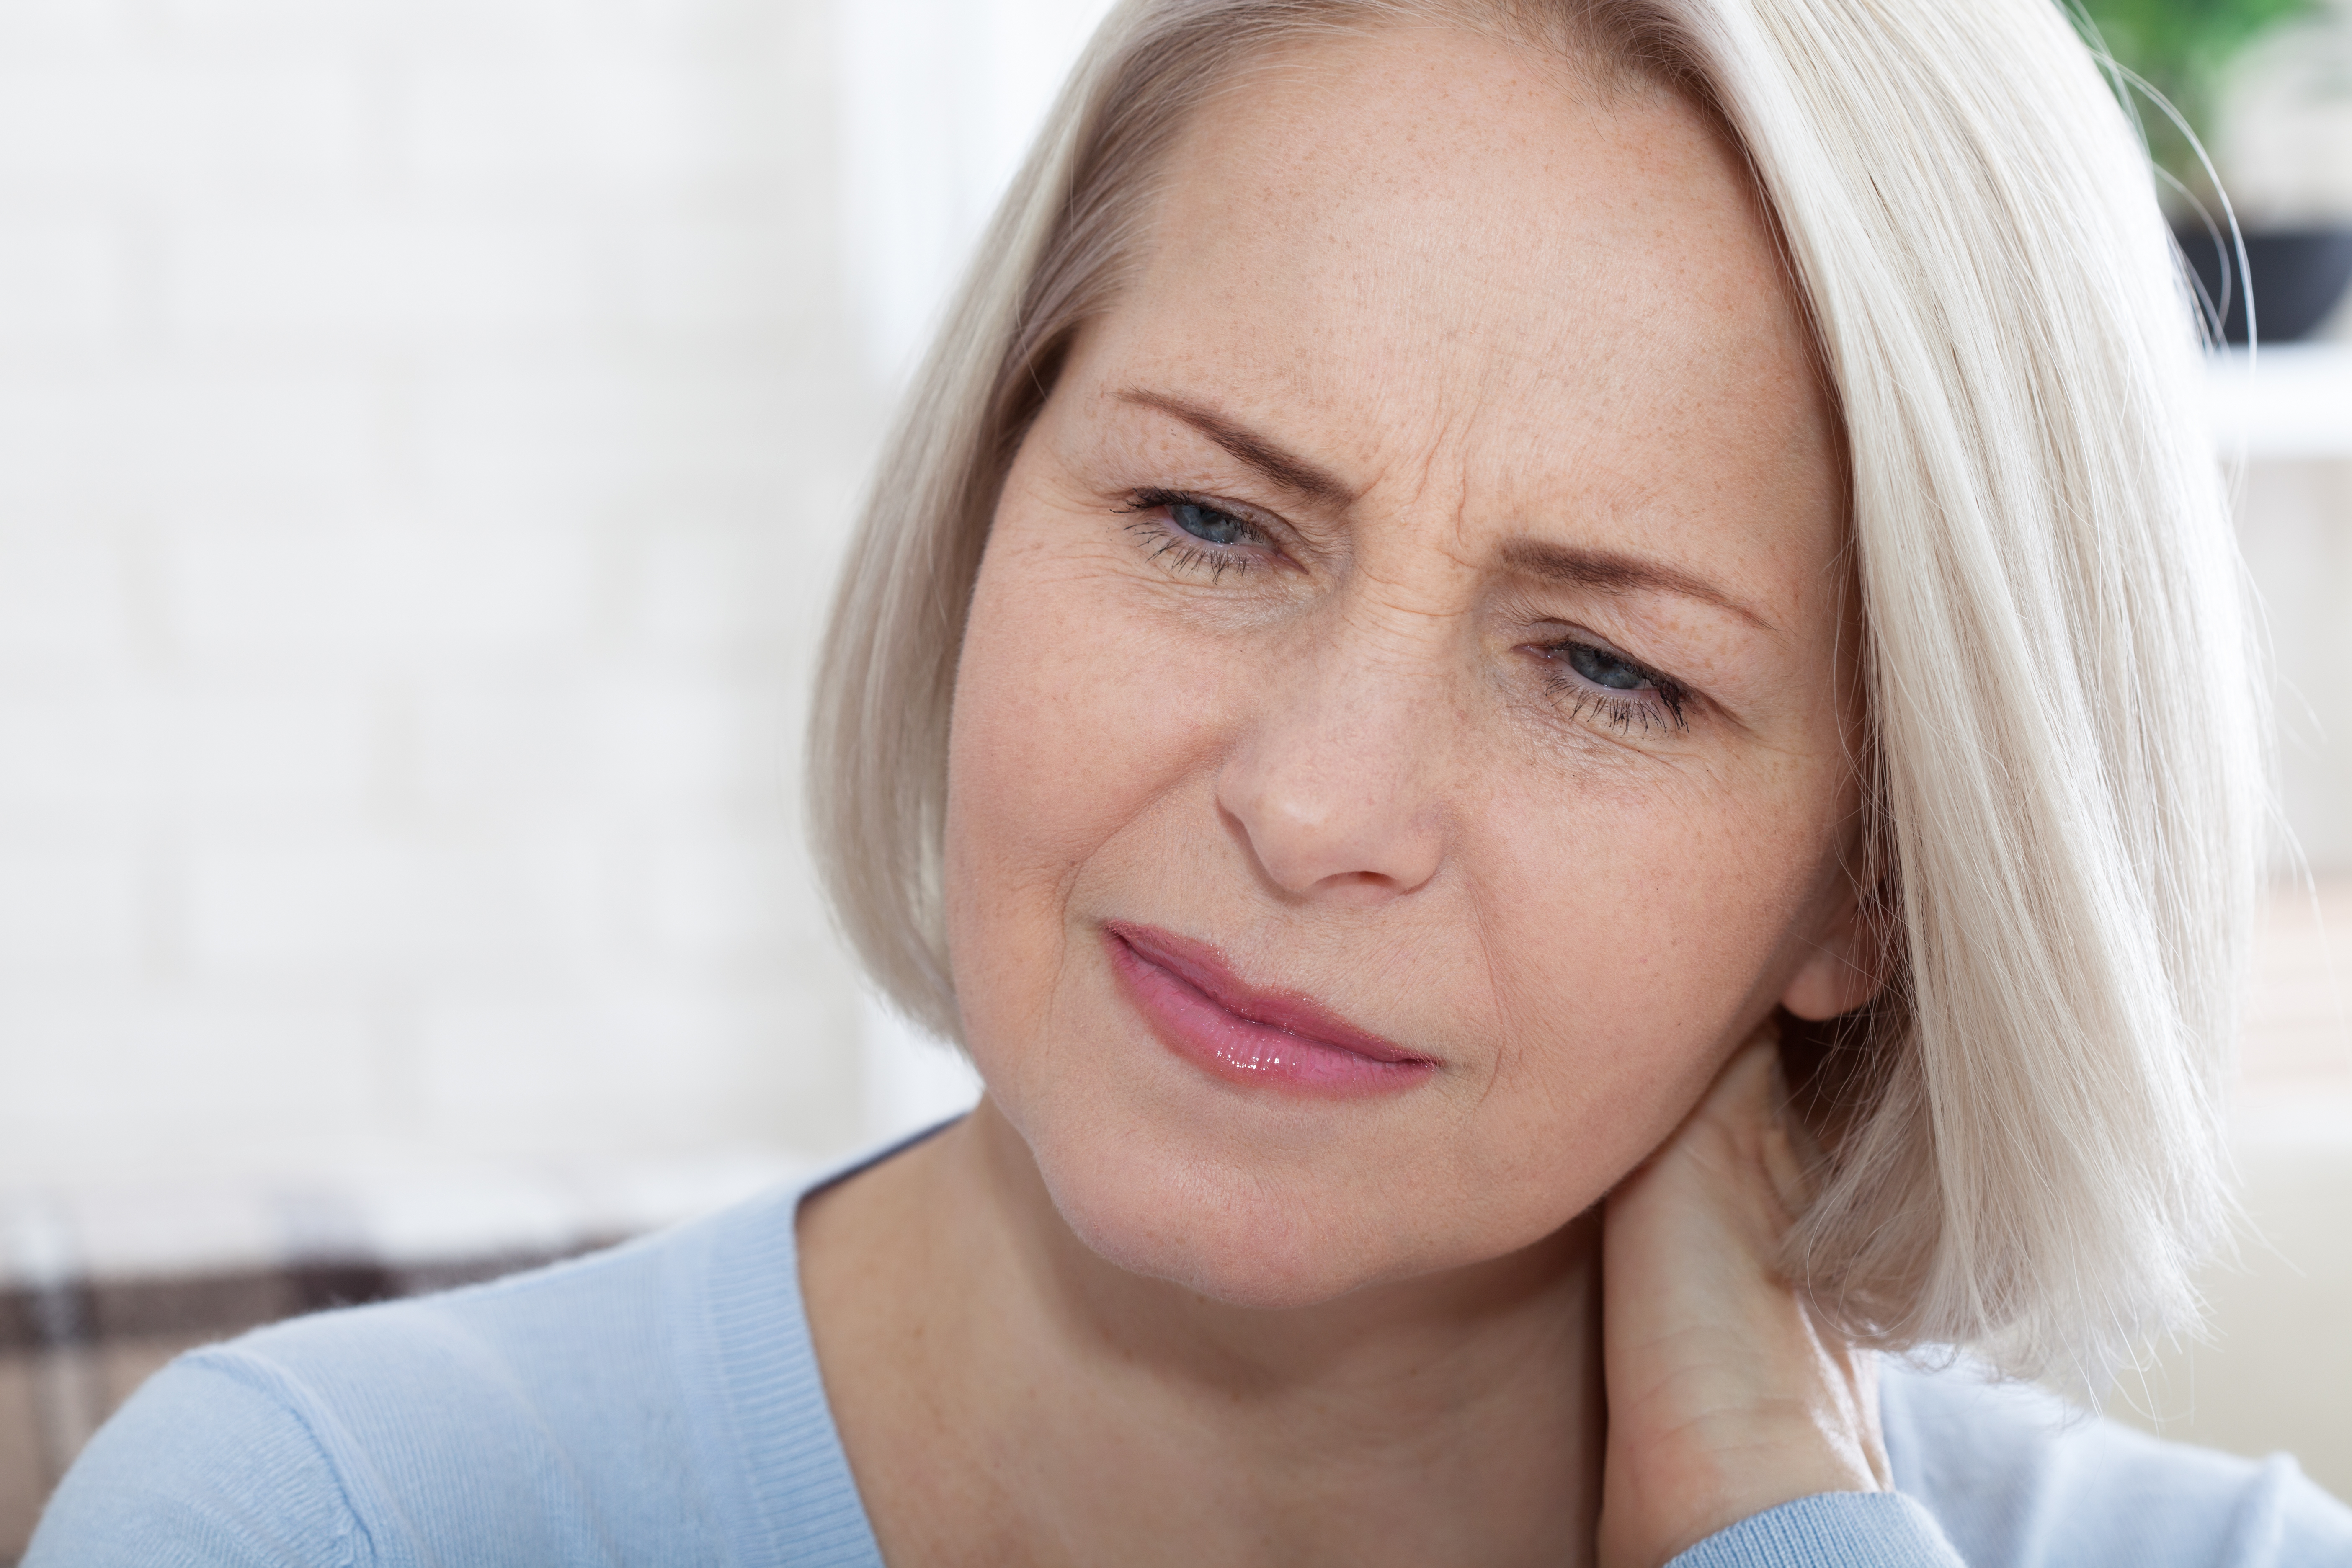 Eine Frau mit einem besorgten Gesichtsausdruck | Quelle: Shutterstock